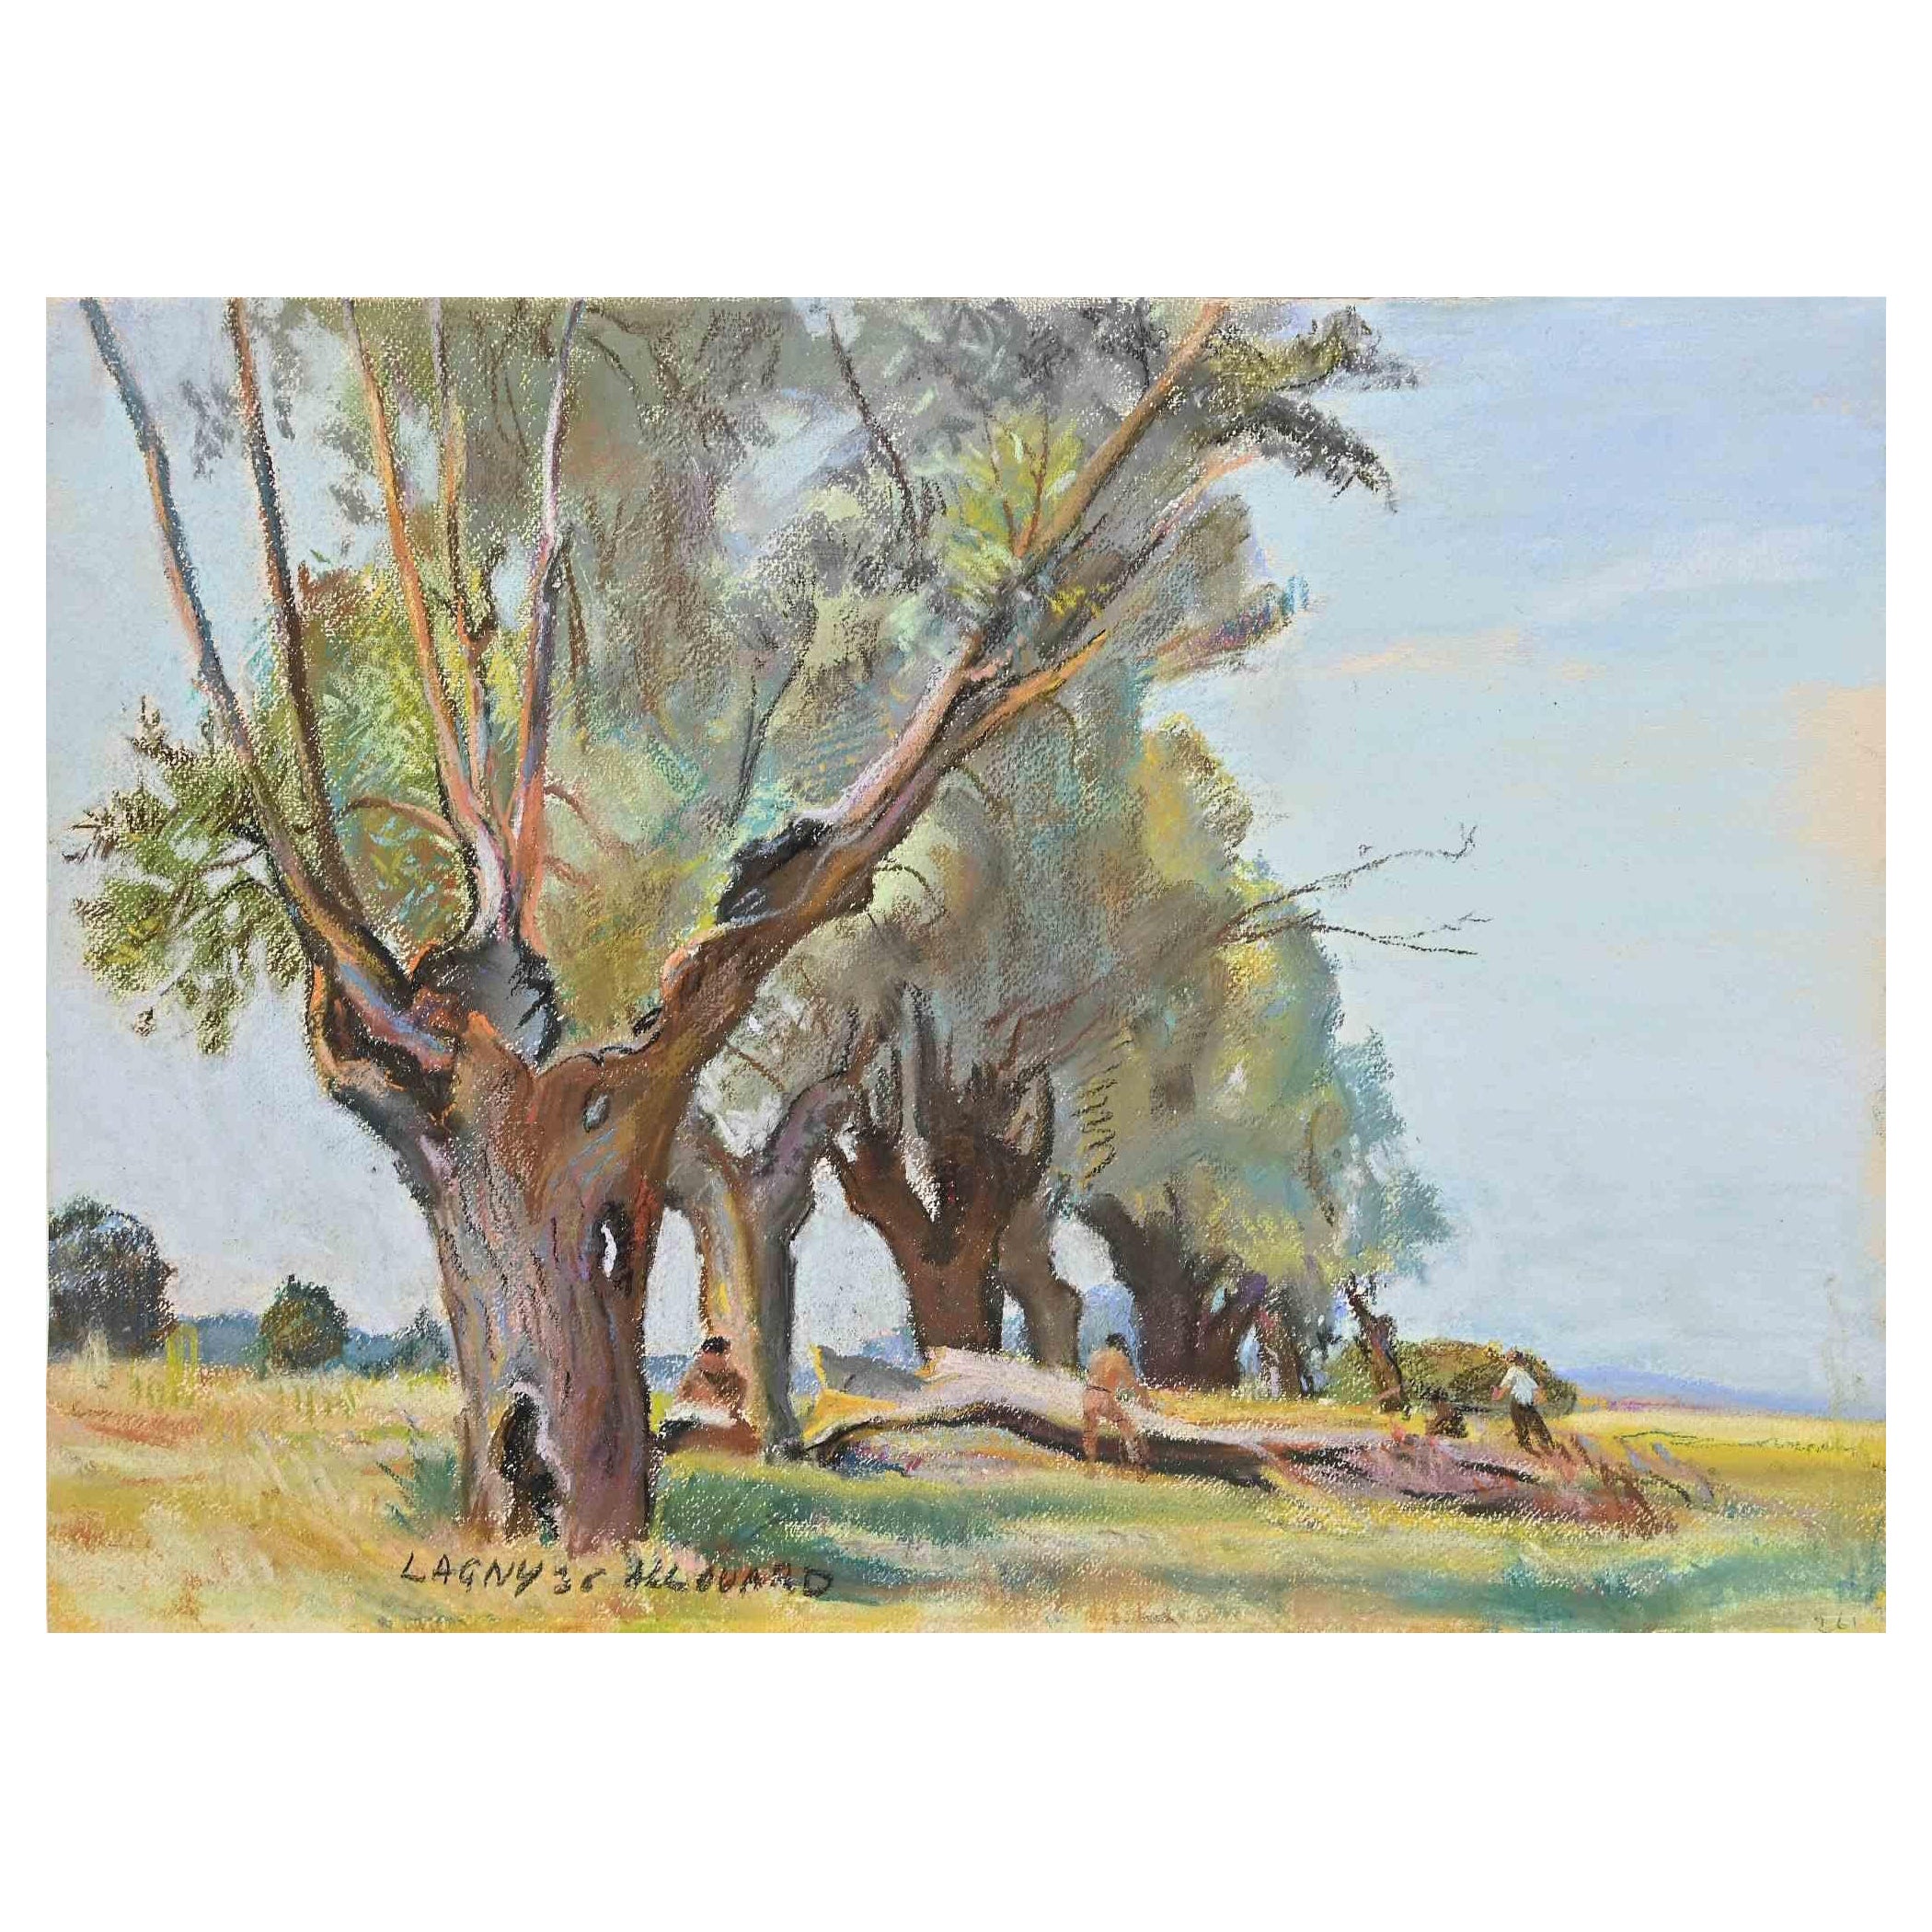 Landschaft in Lagny ist ein Original Pastell und Aquarell von Paul Alouard-Carny (1884-1961) aus dem Jahr 1936.

Guter Zustand auf vergilbtem Papier.

Handsigniert vom Künstler in der linken unteren Ecke.

